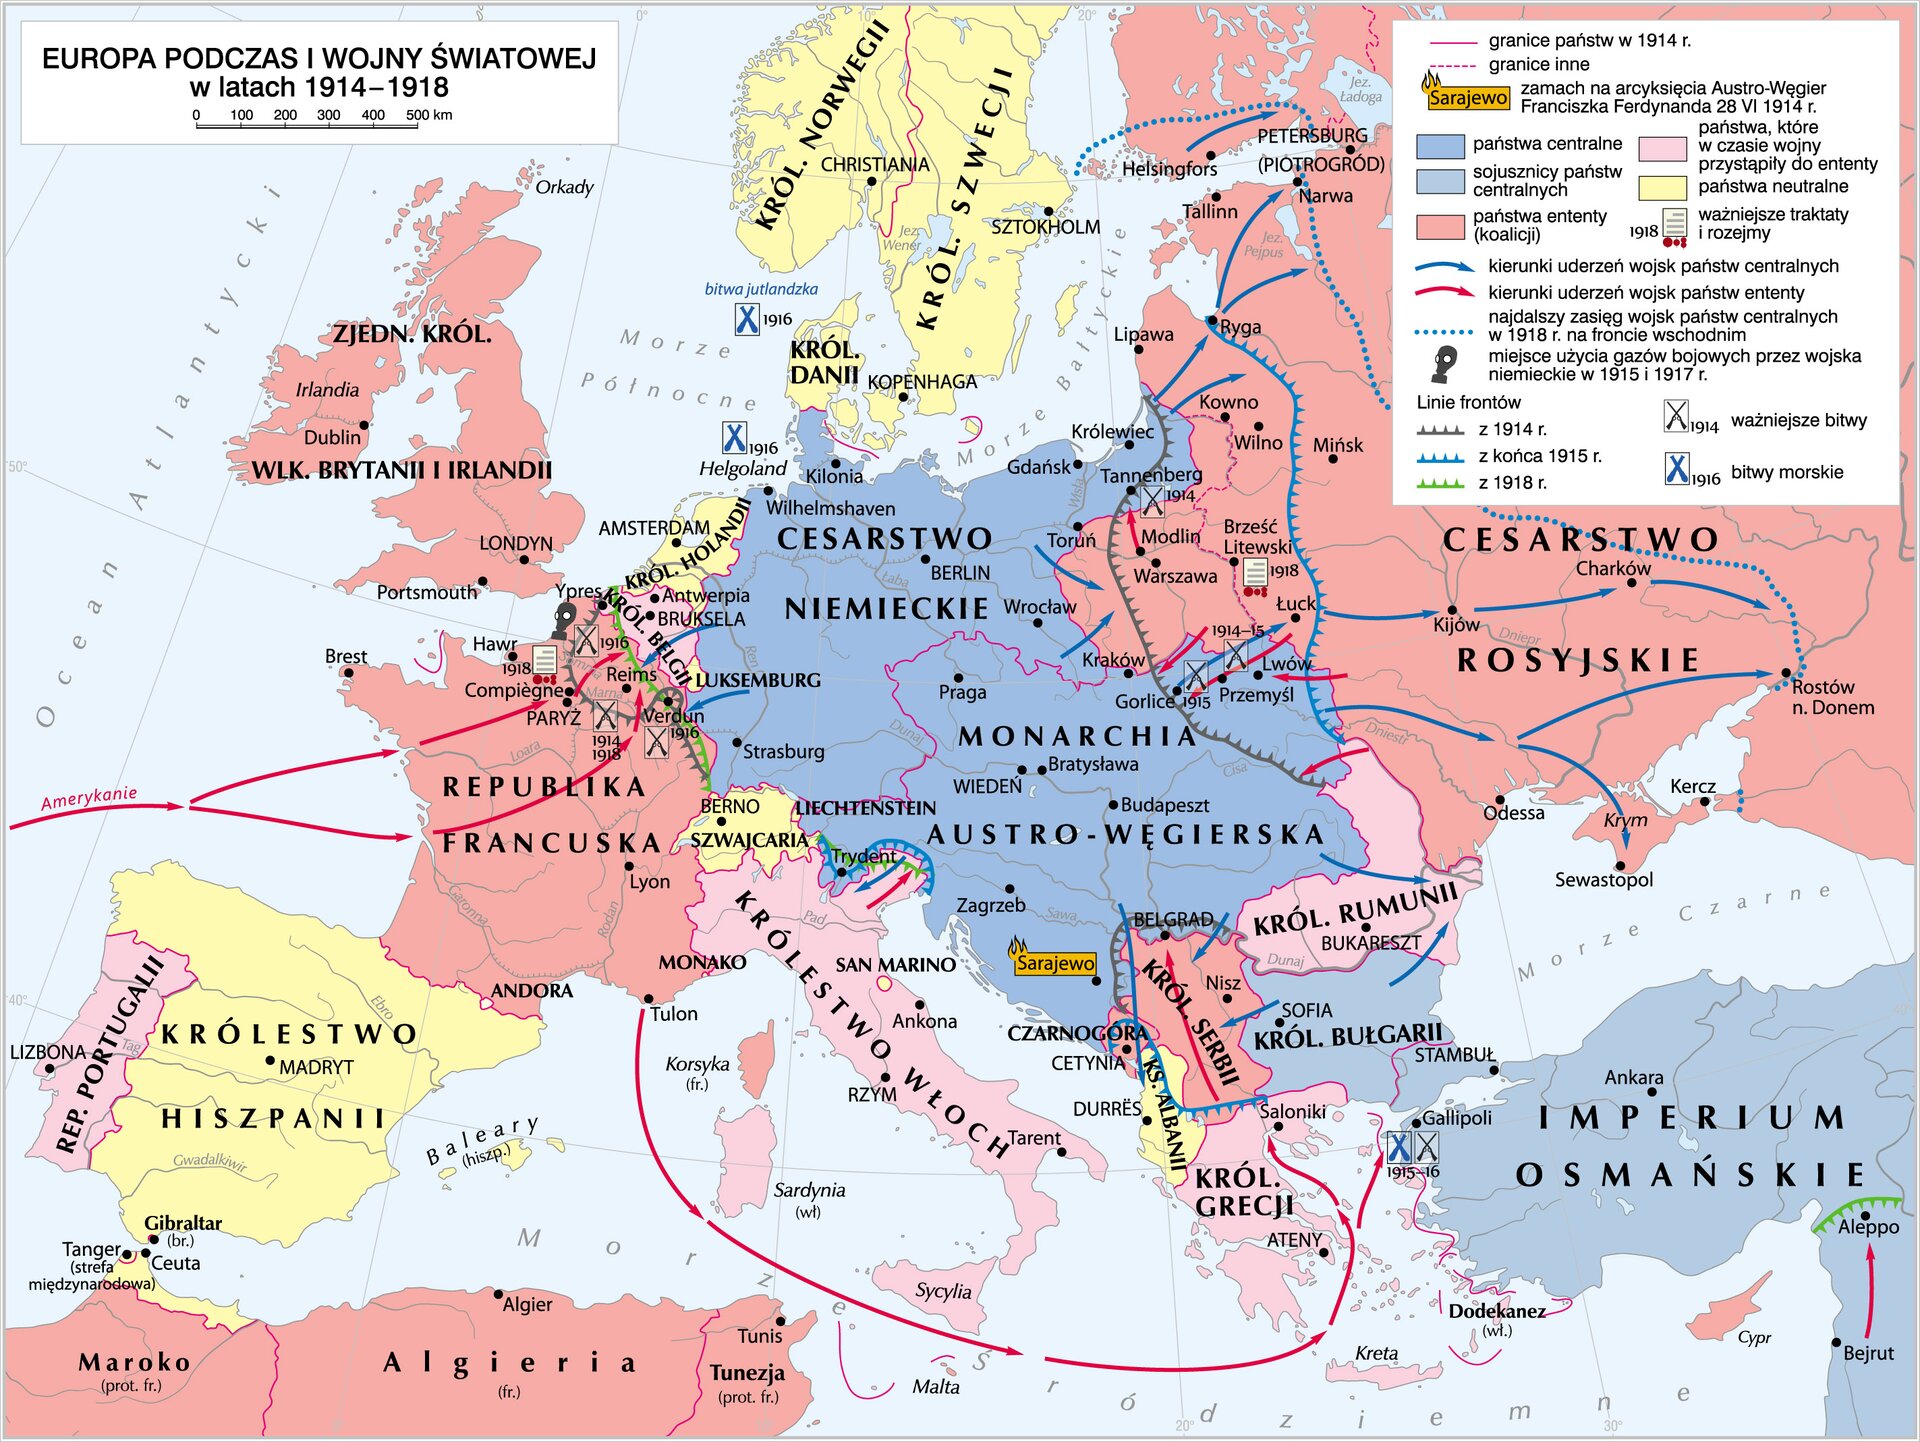 Europa podczas I wojny światowej , na mapie państwa istniejące w tym okresie czasu.